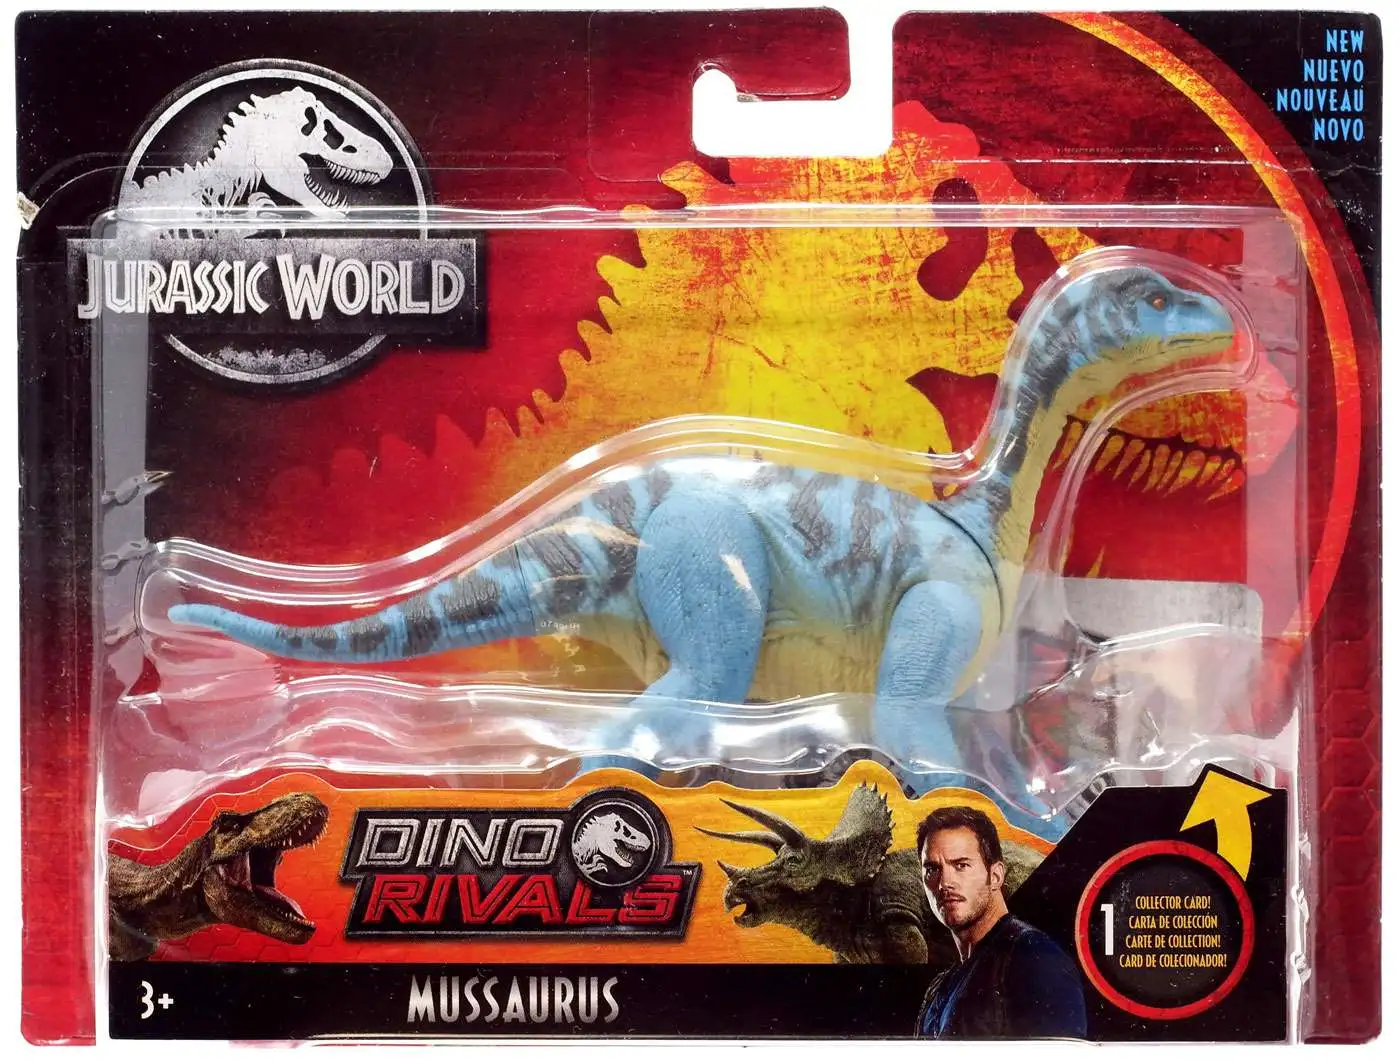 Jurassic World Attack Pack Mussaurus Figure NEW 2020 